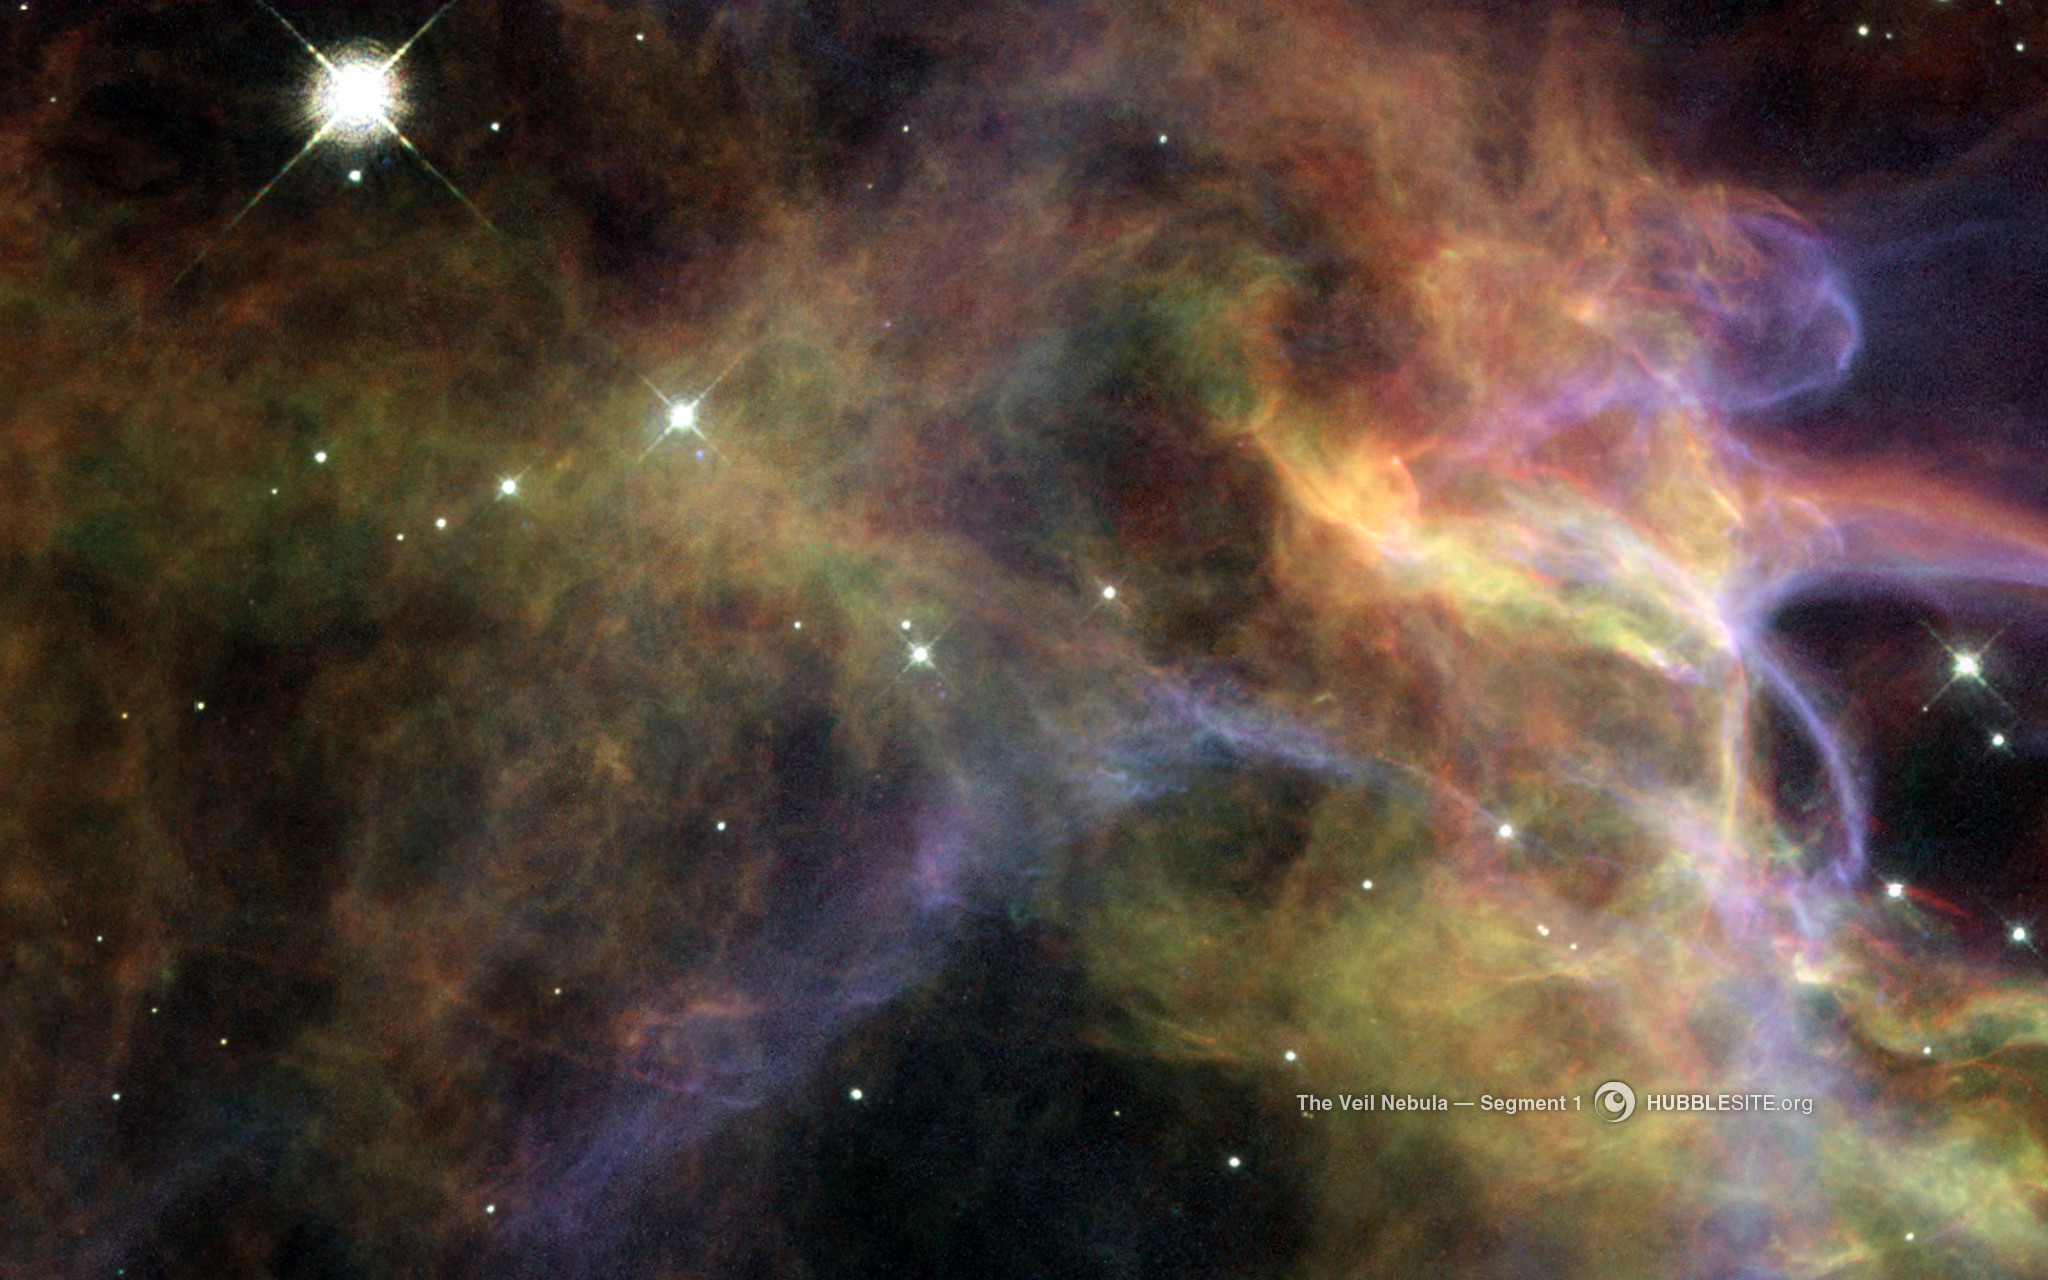 The Veil Nebula, segment 1